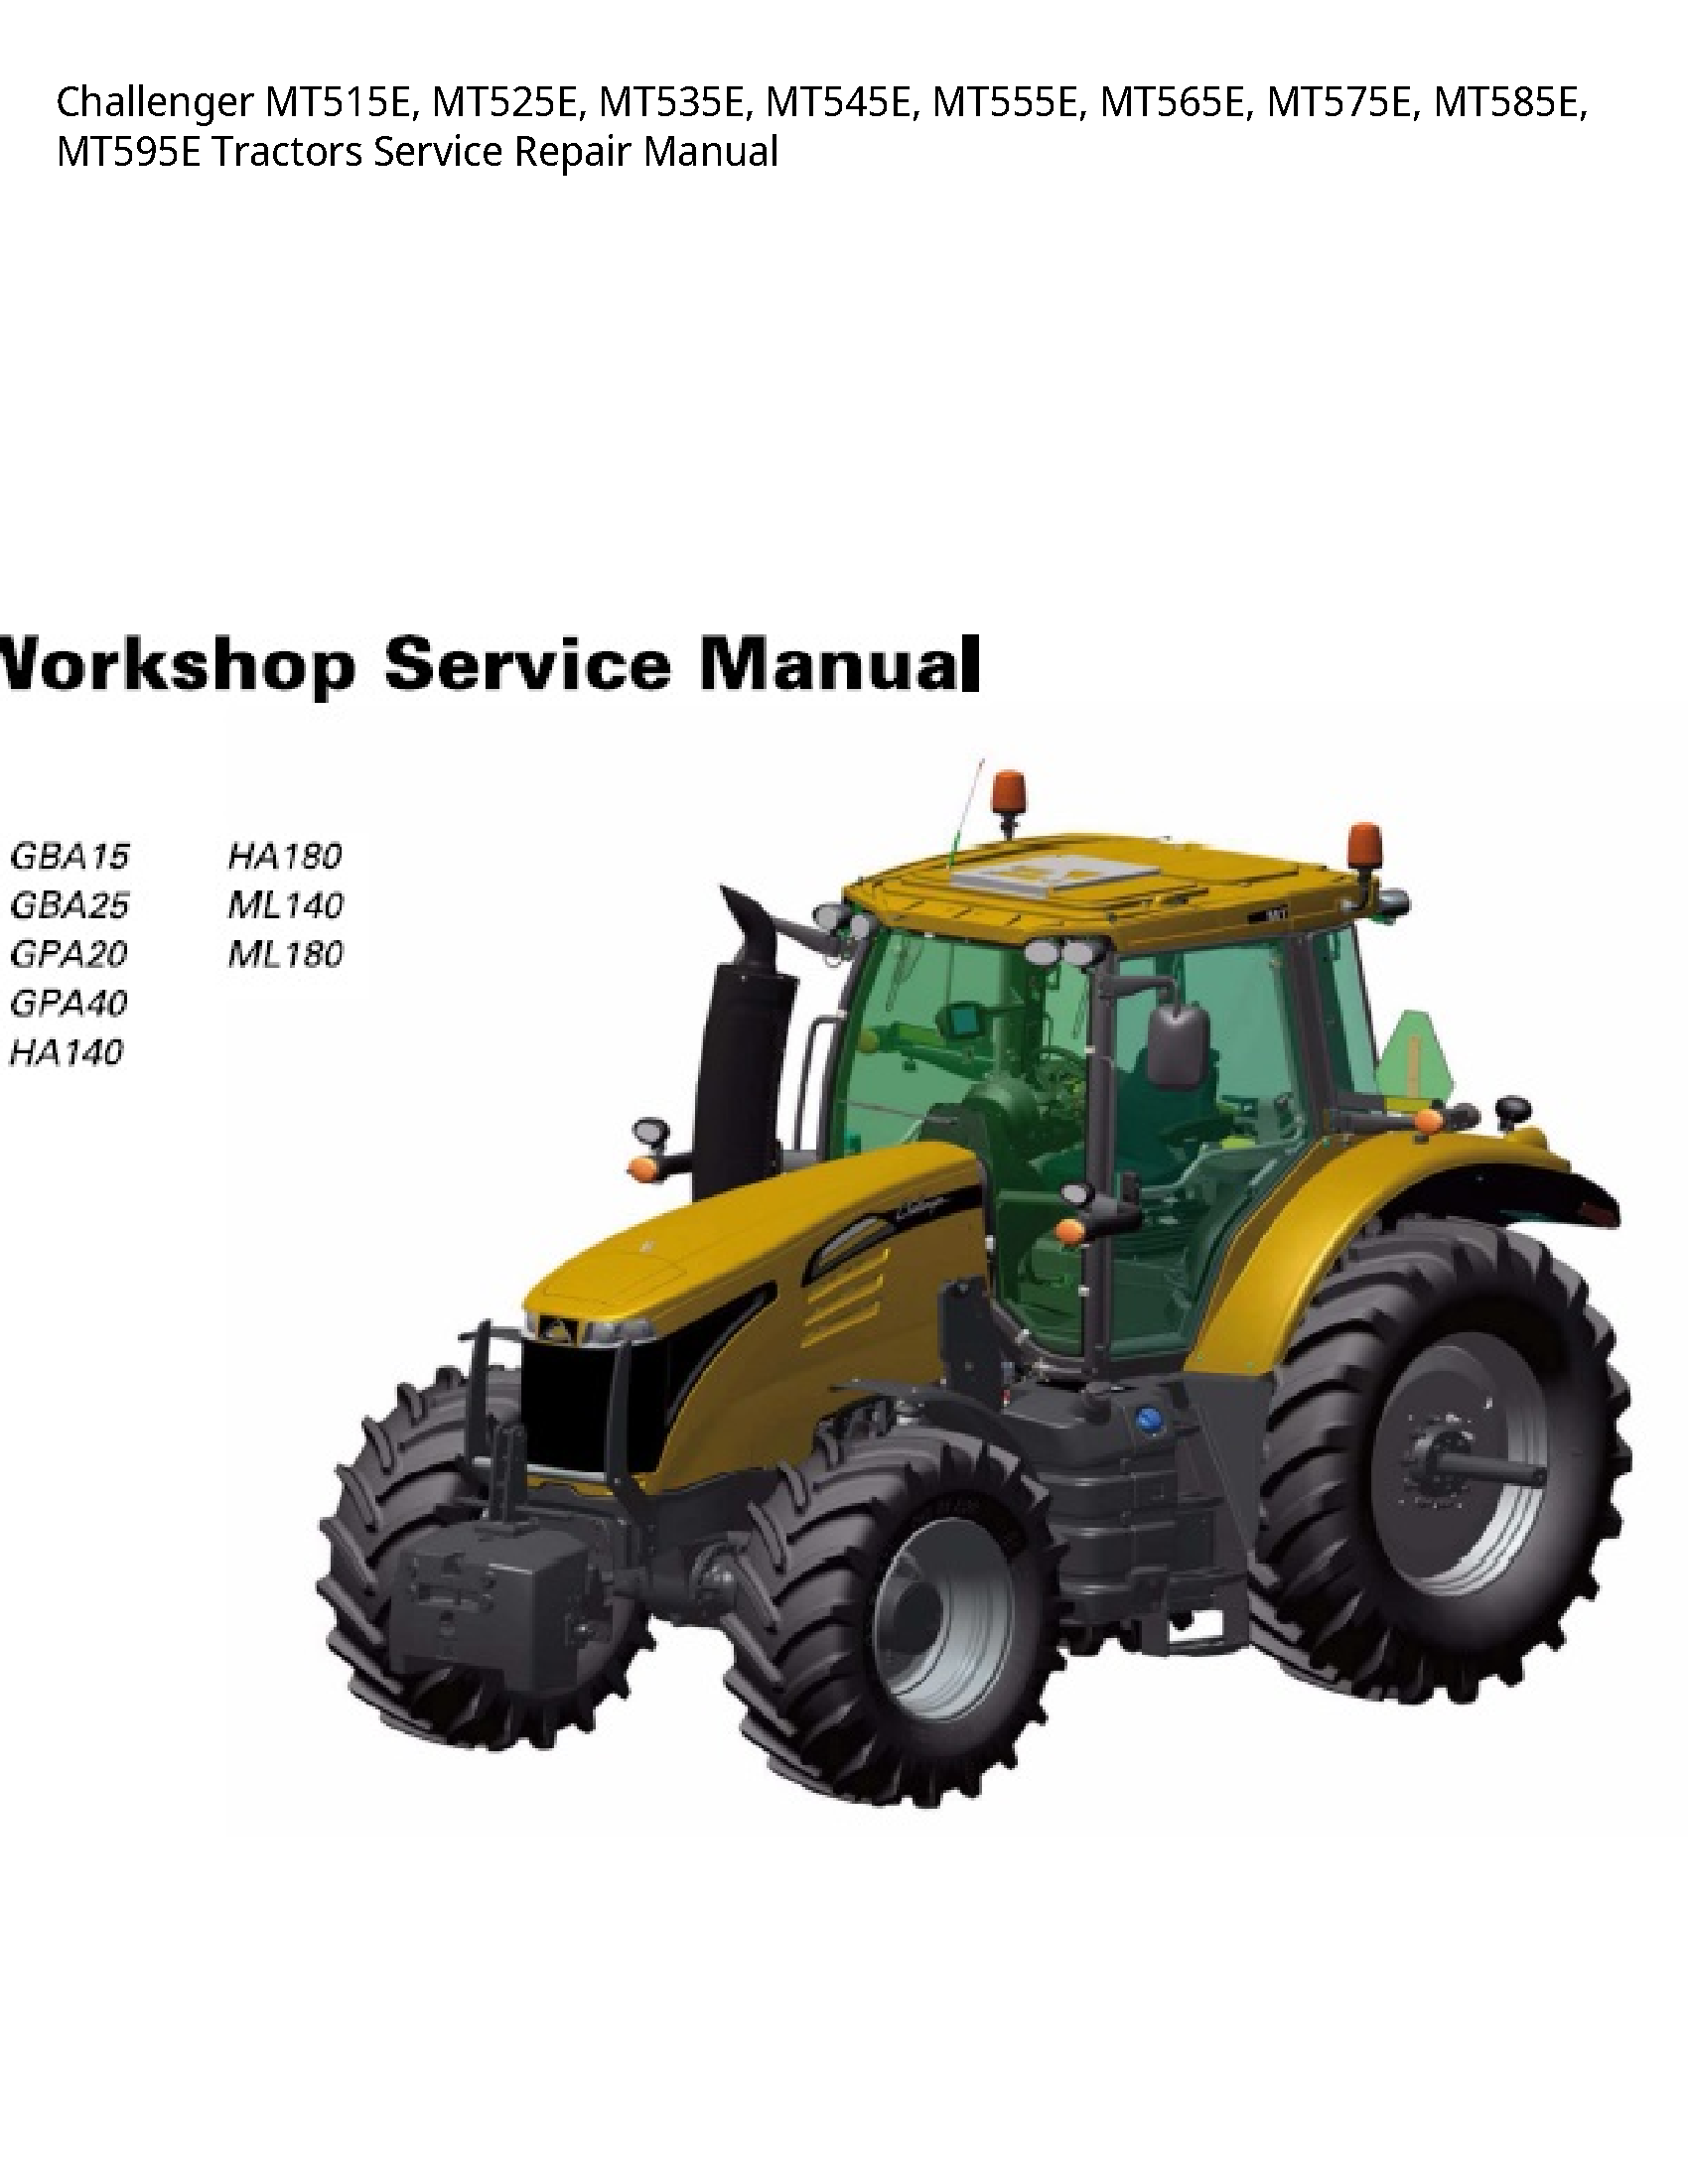 Challenger MT515E Tractors manual